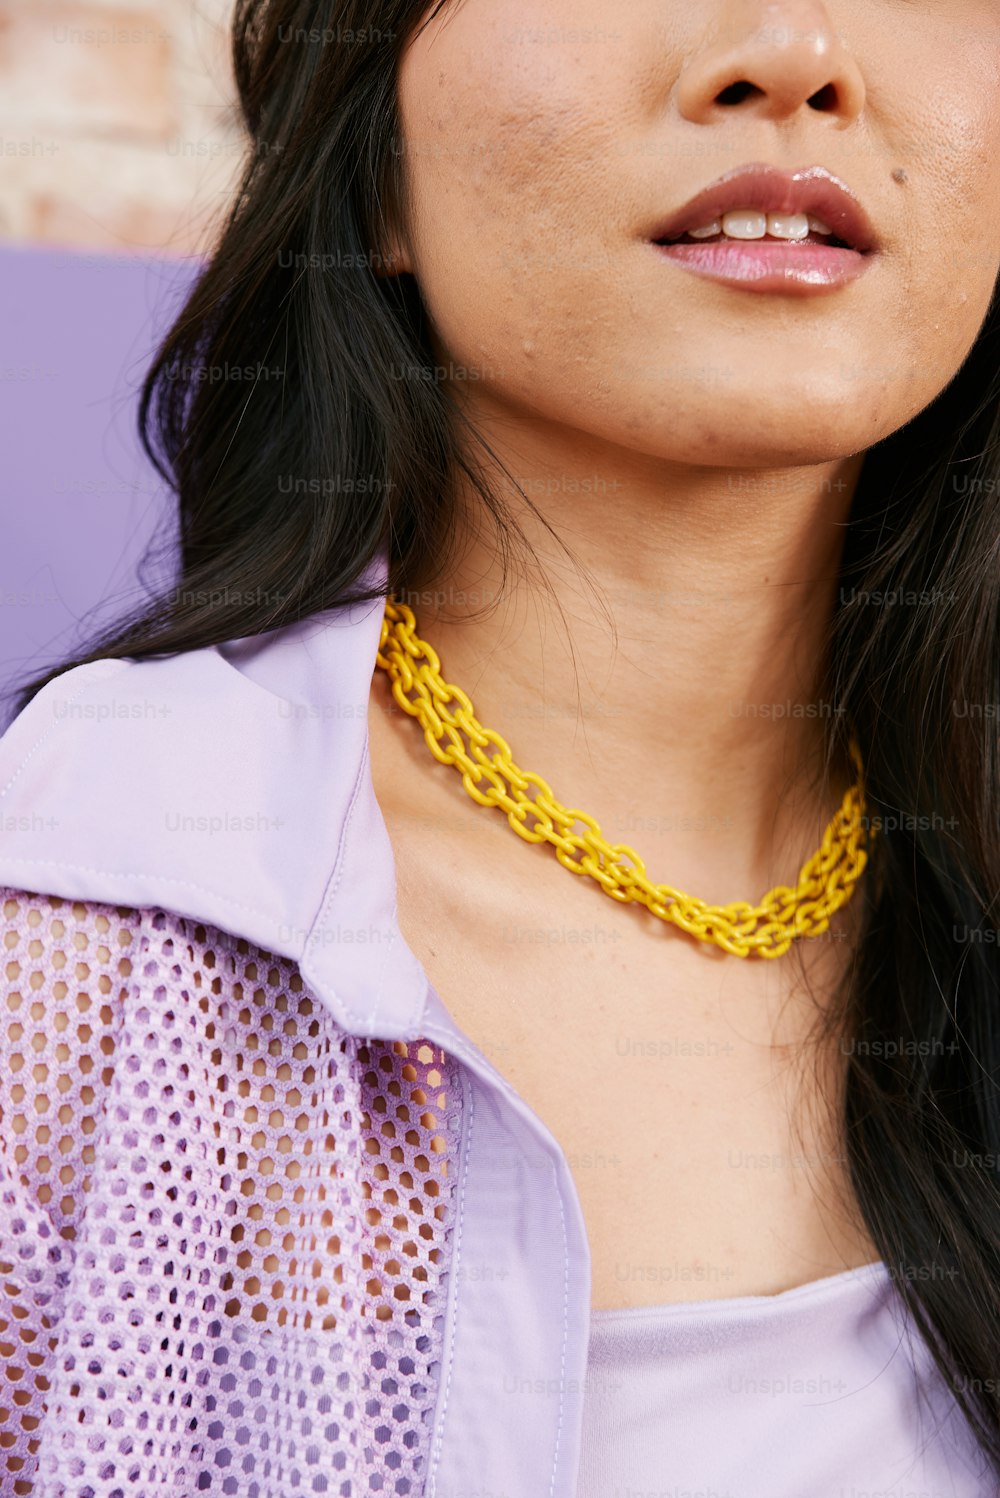 Eine Frau, die eine gelbe Halskette trägt